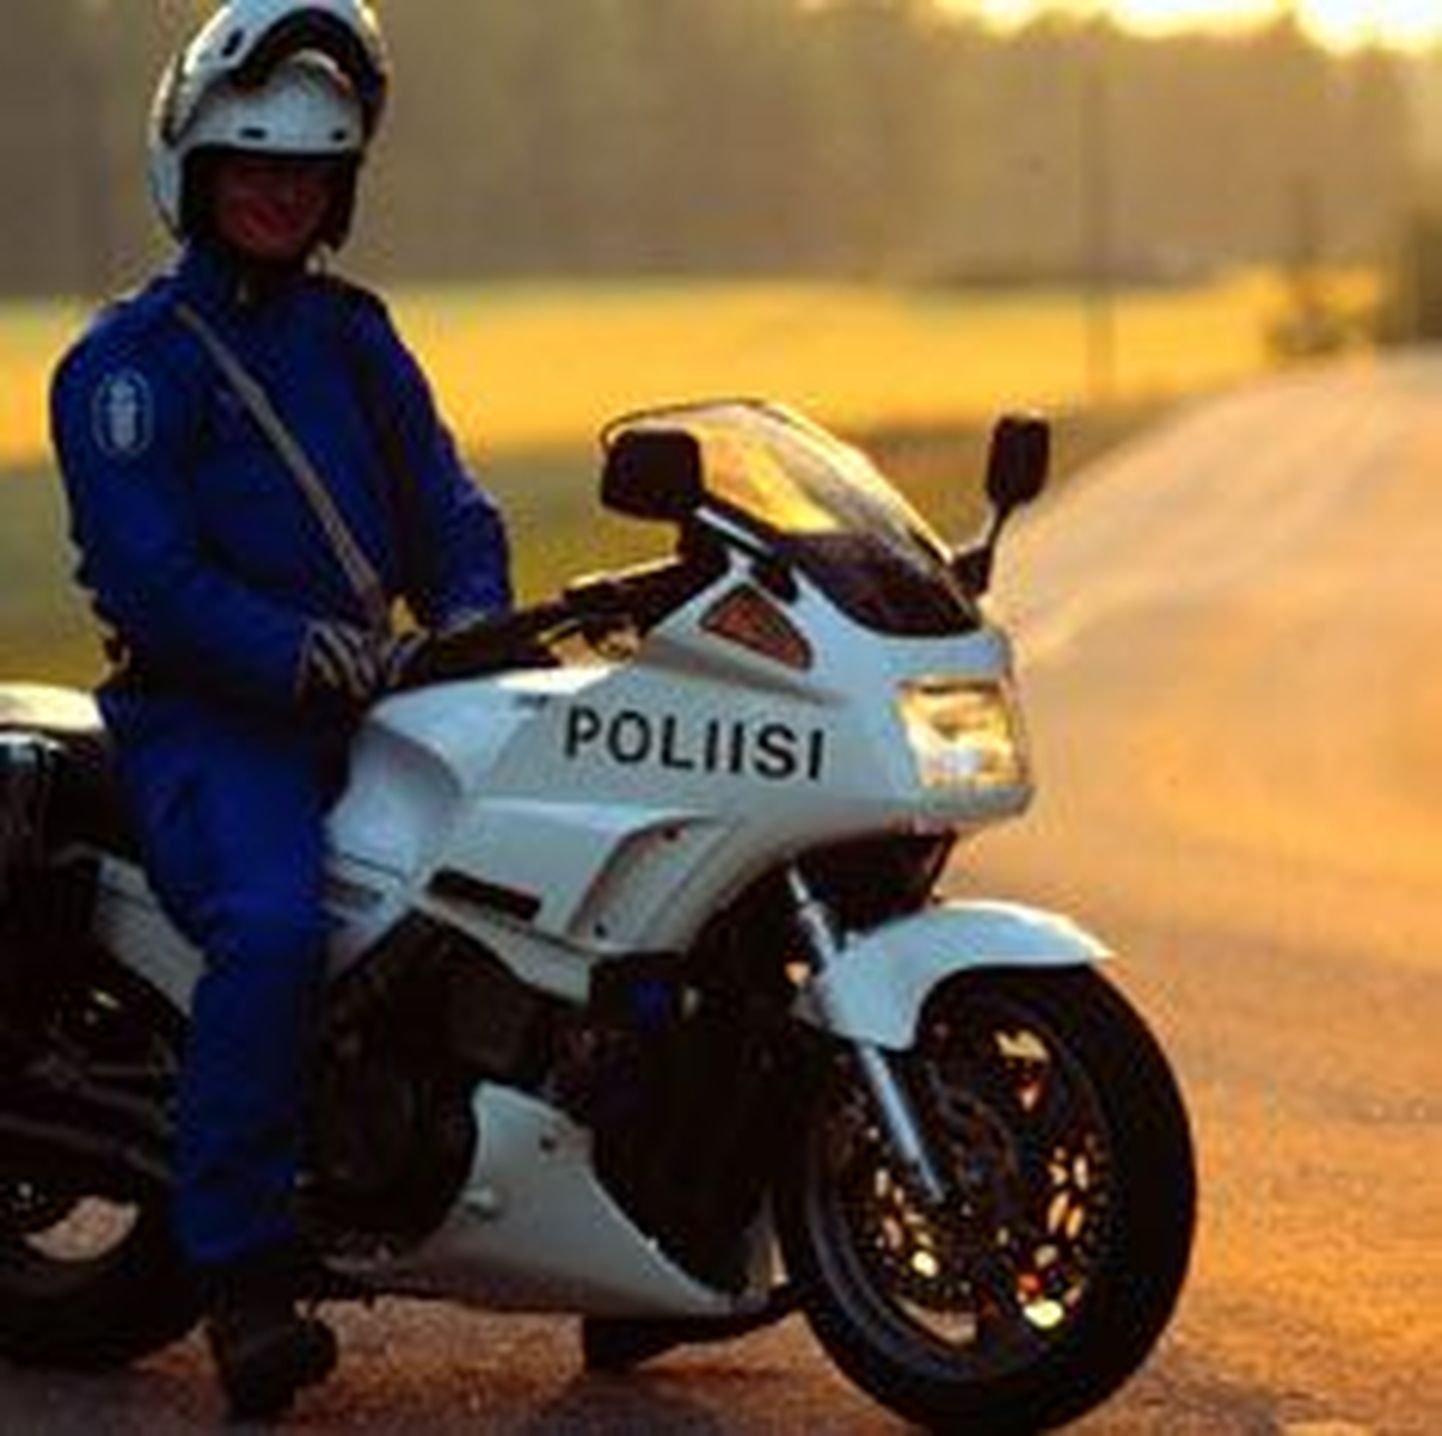 Soome liikluspolitsei